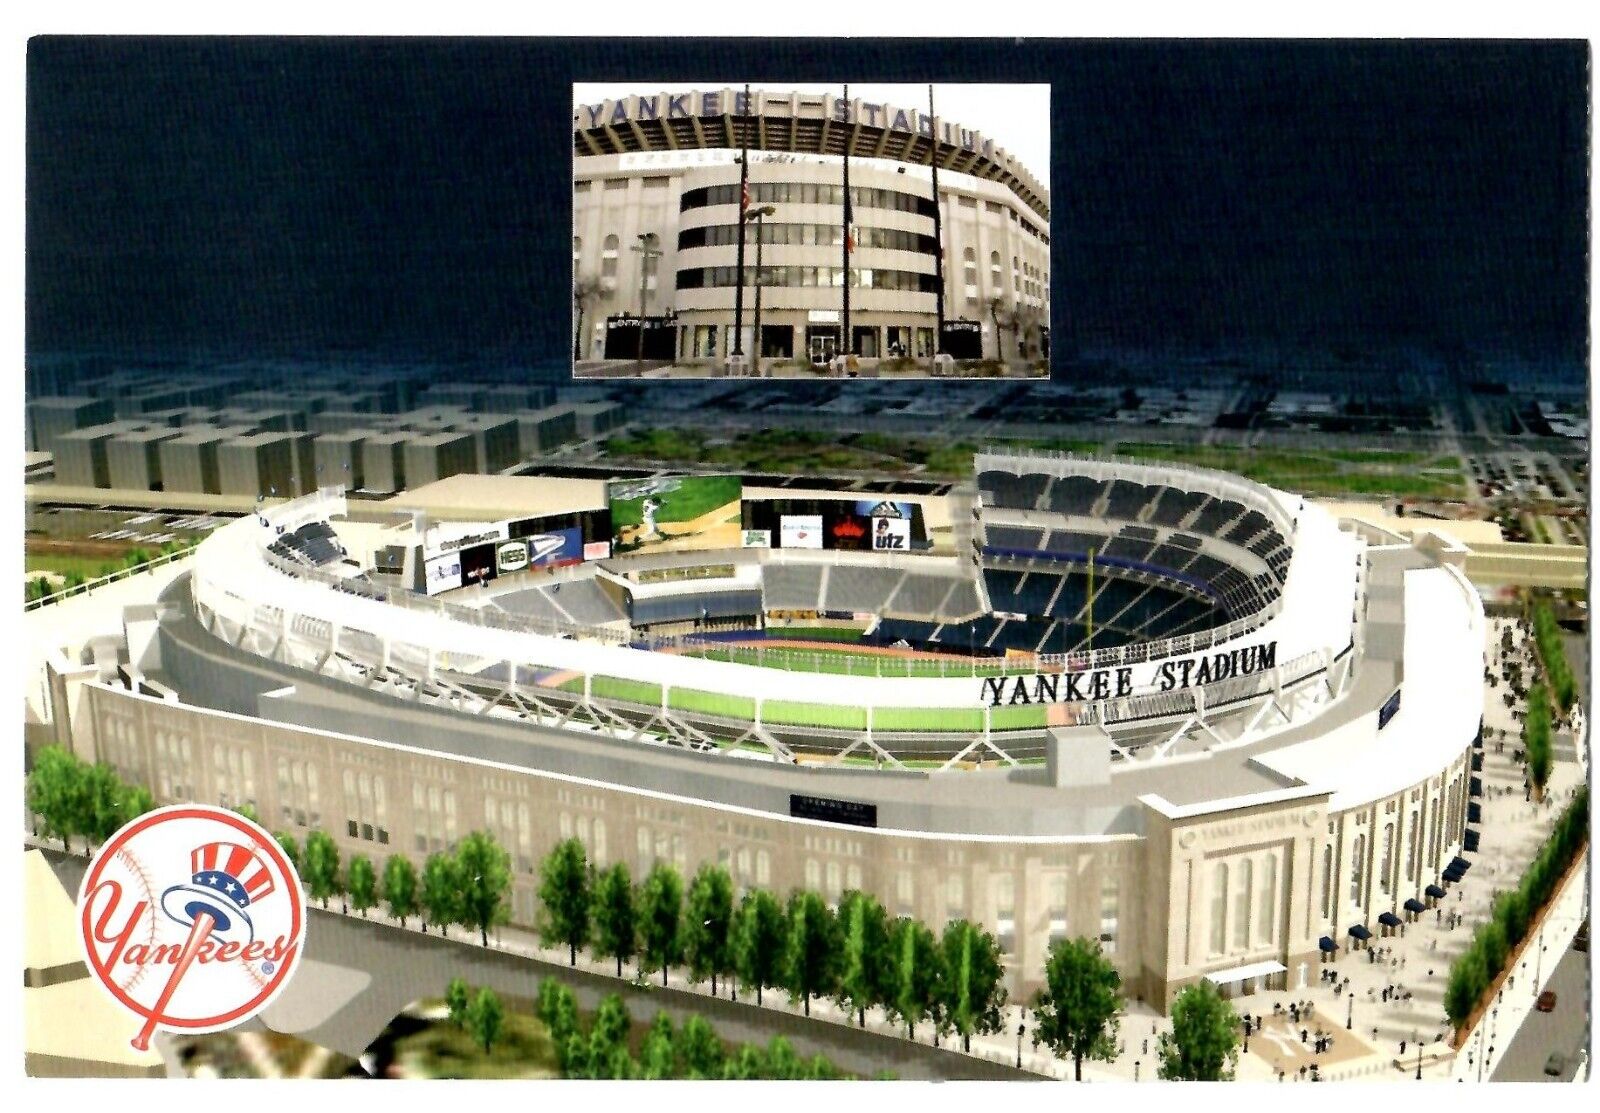 2009 2008 Yankees Final & Inaugural Season Commemorative Postcard NM